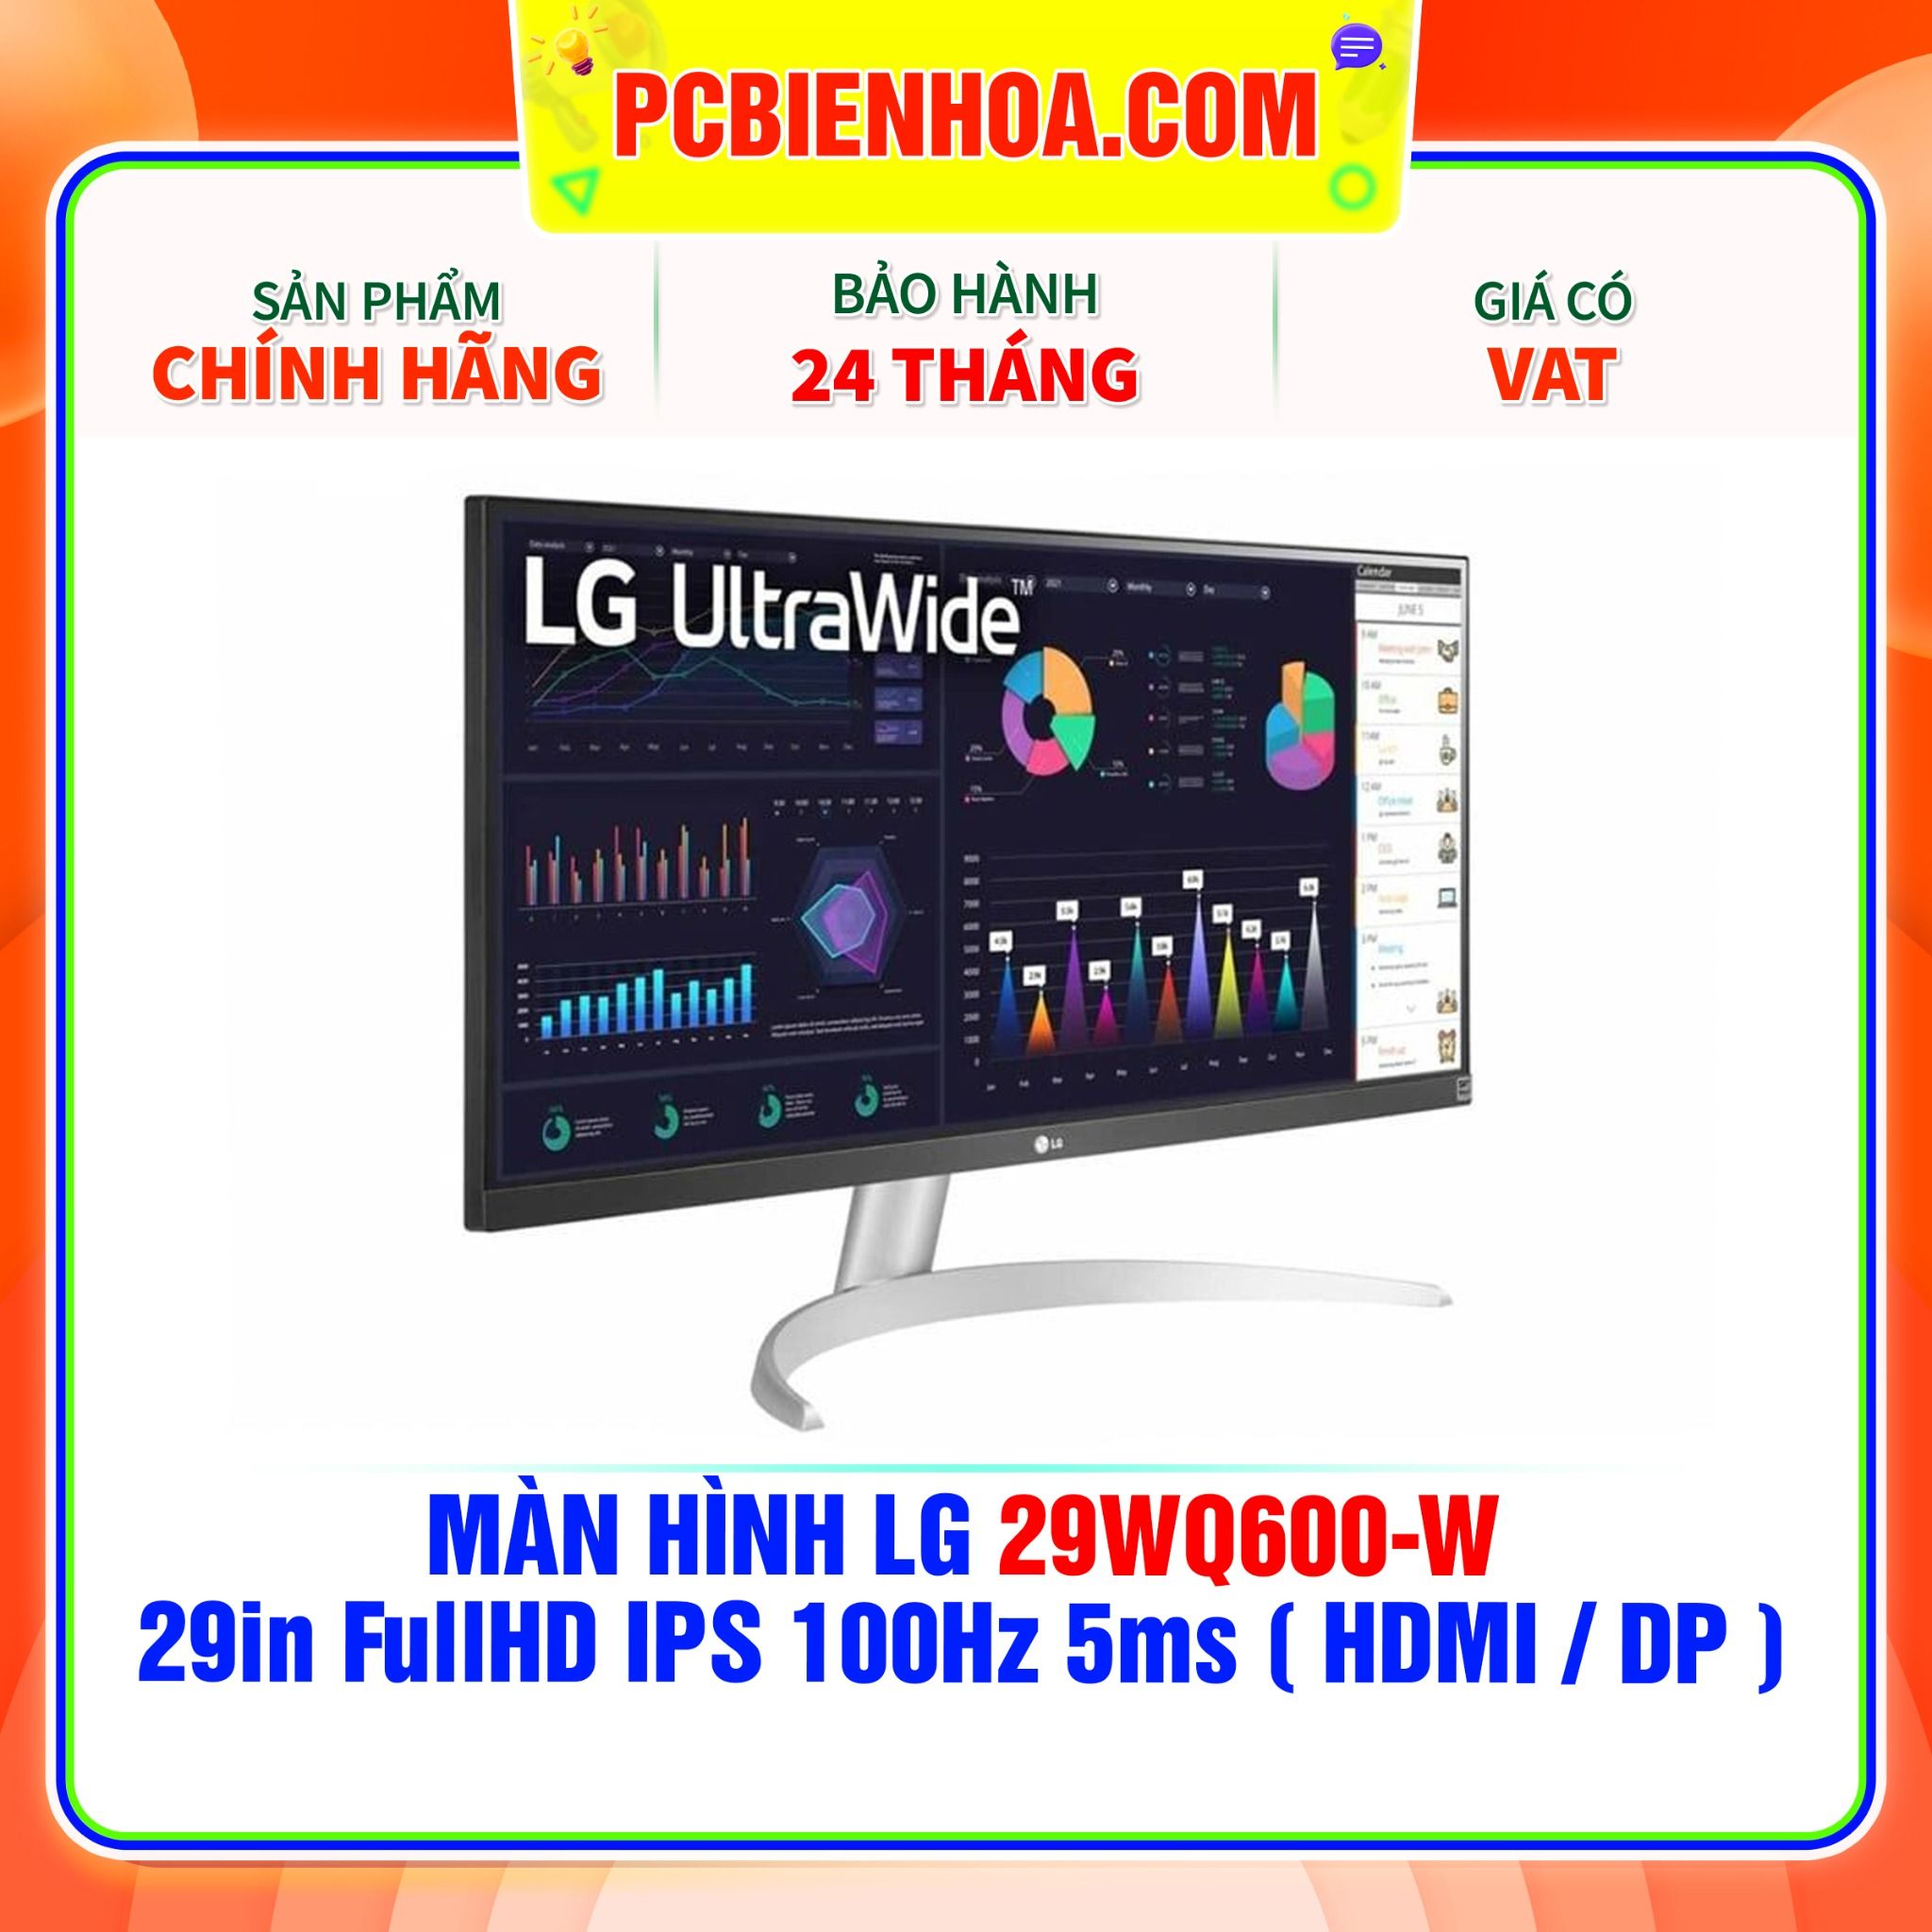  MÀN HÌNH LG 29WQ600-W 29in FullHD IPS 100Hz 5ms ( HDMI / DP ) 